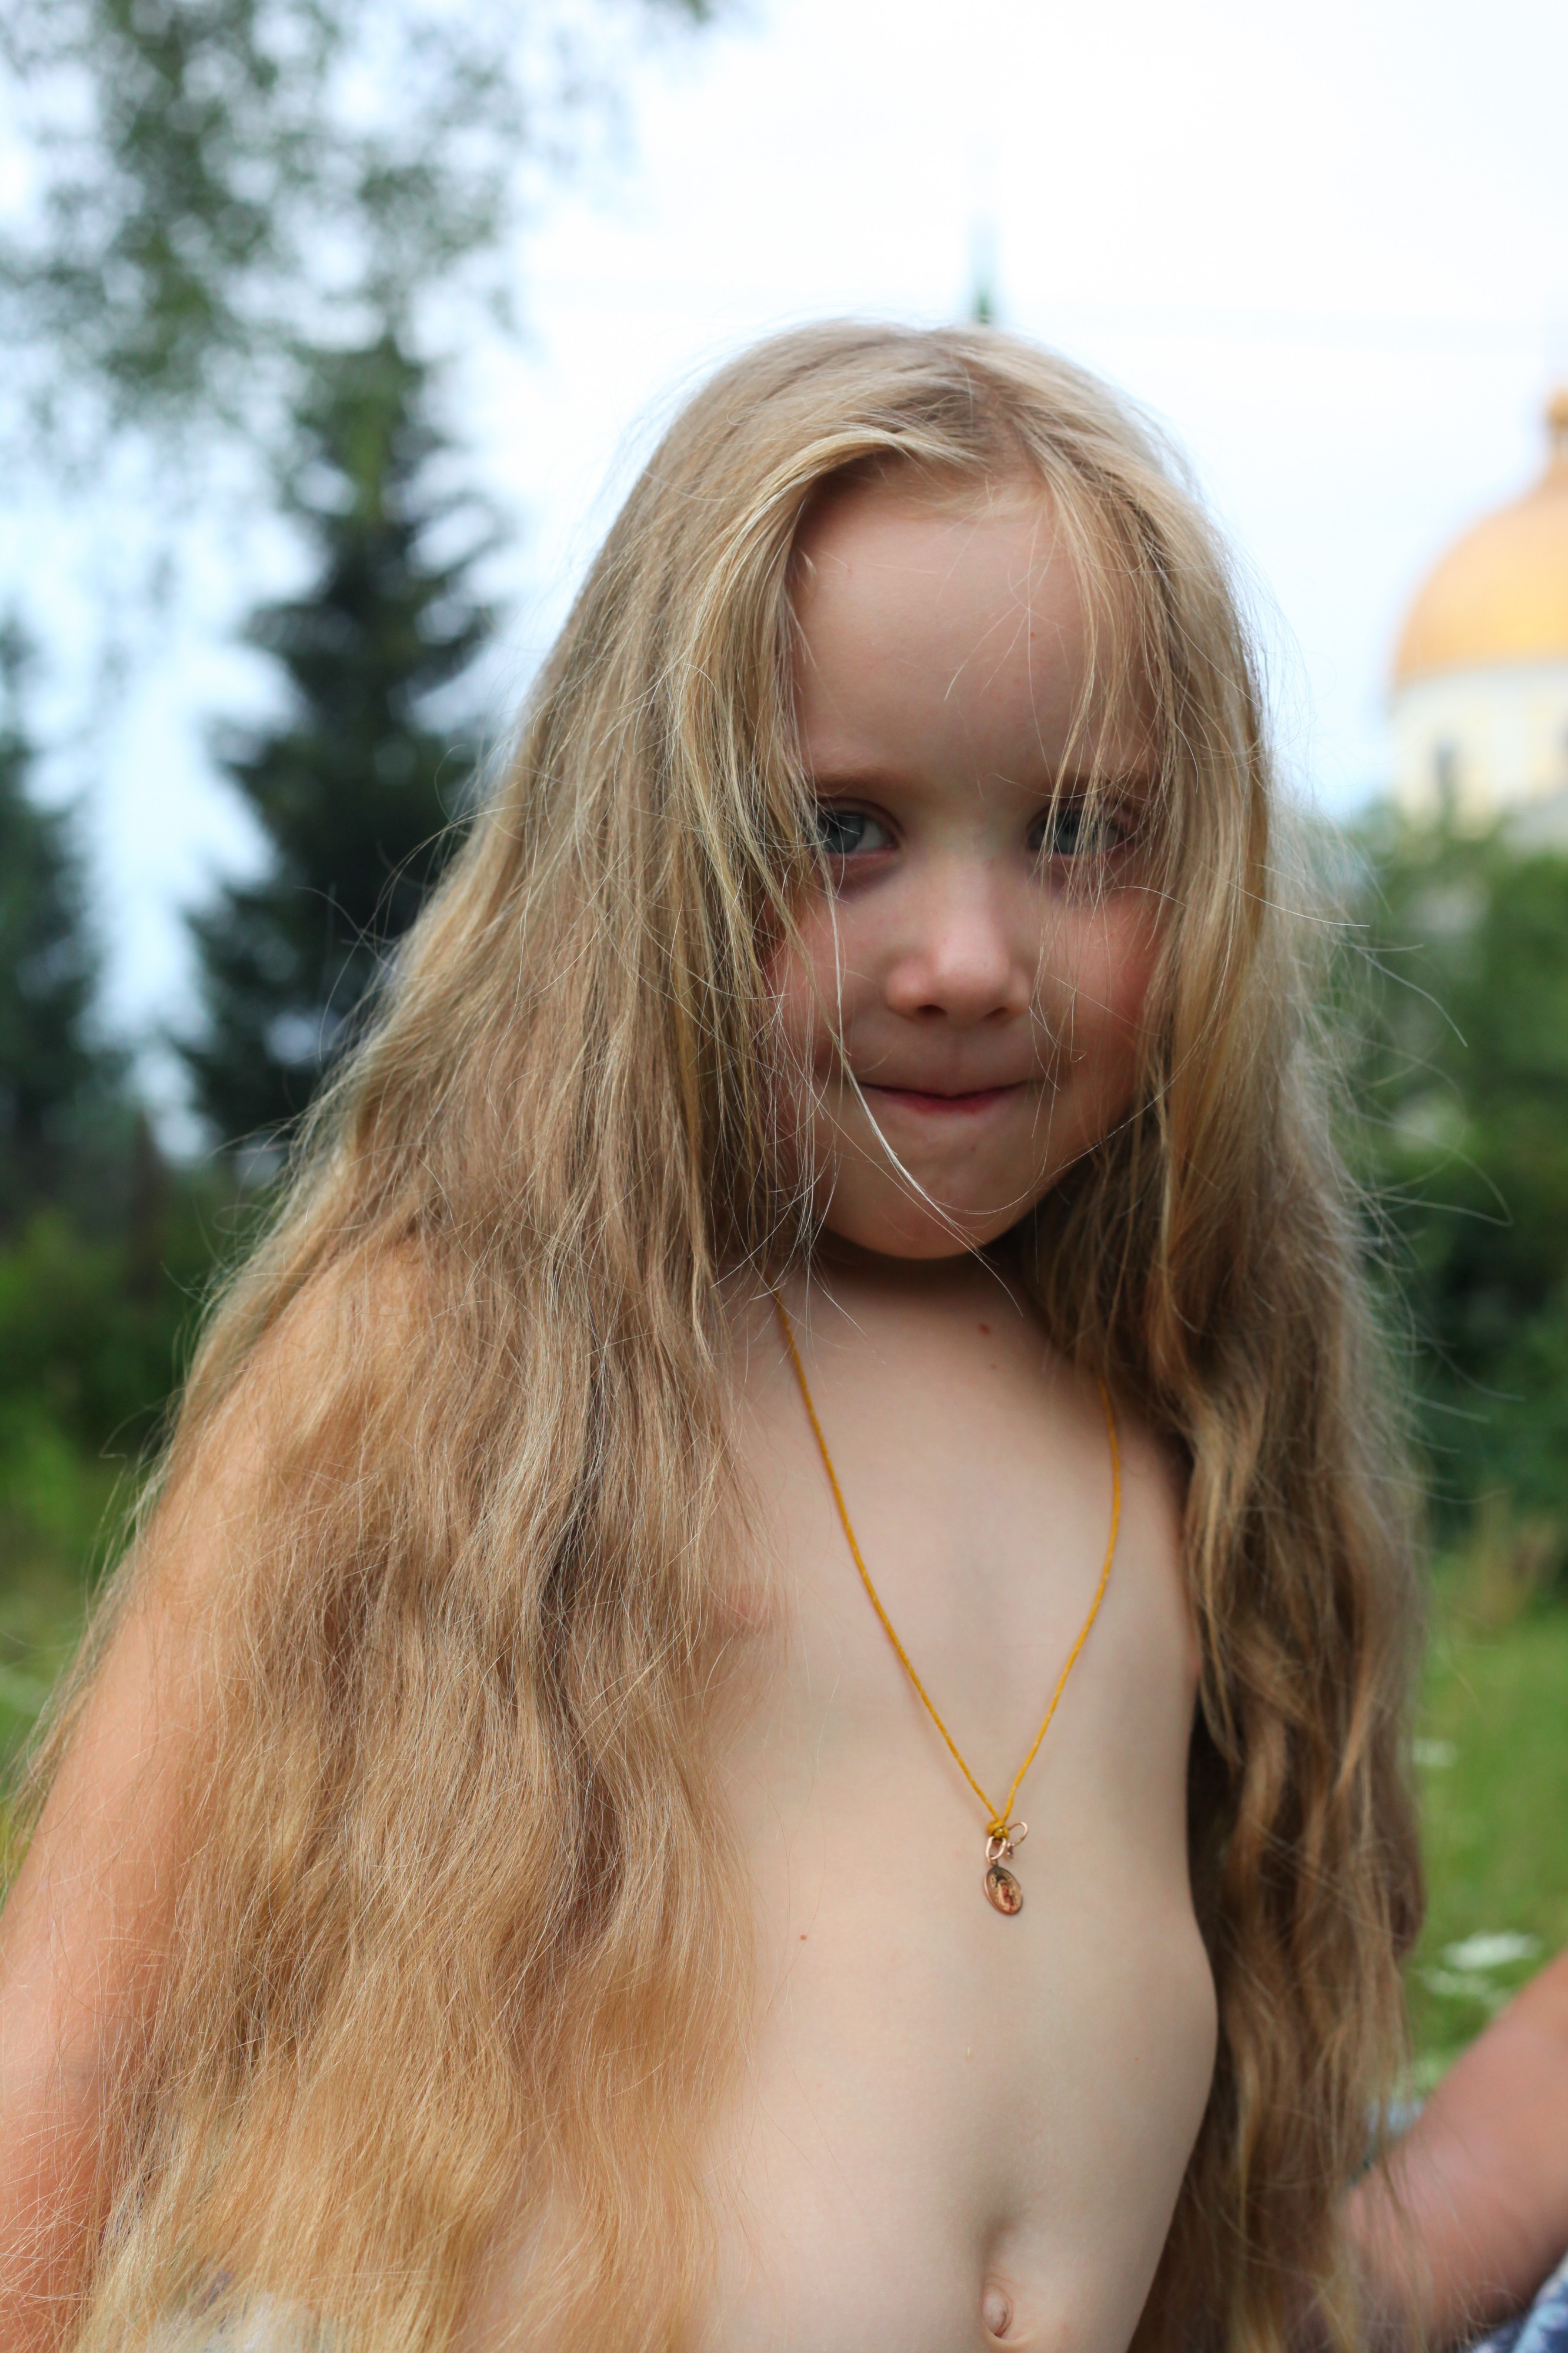 a child girl with a long fair hair